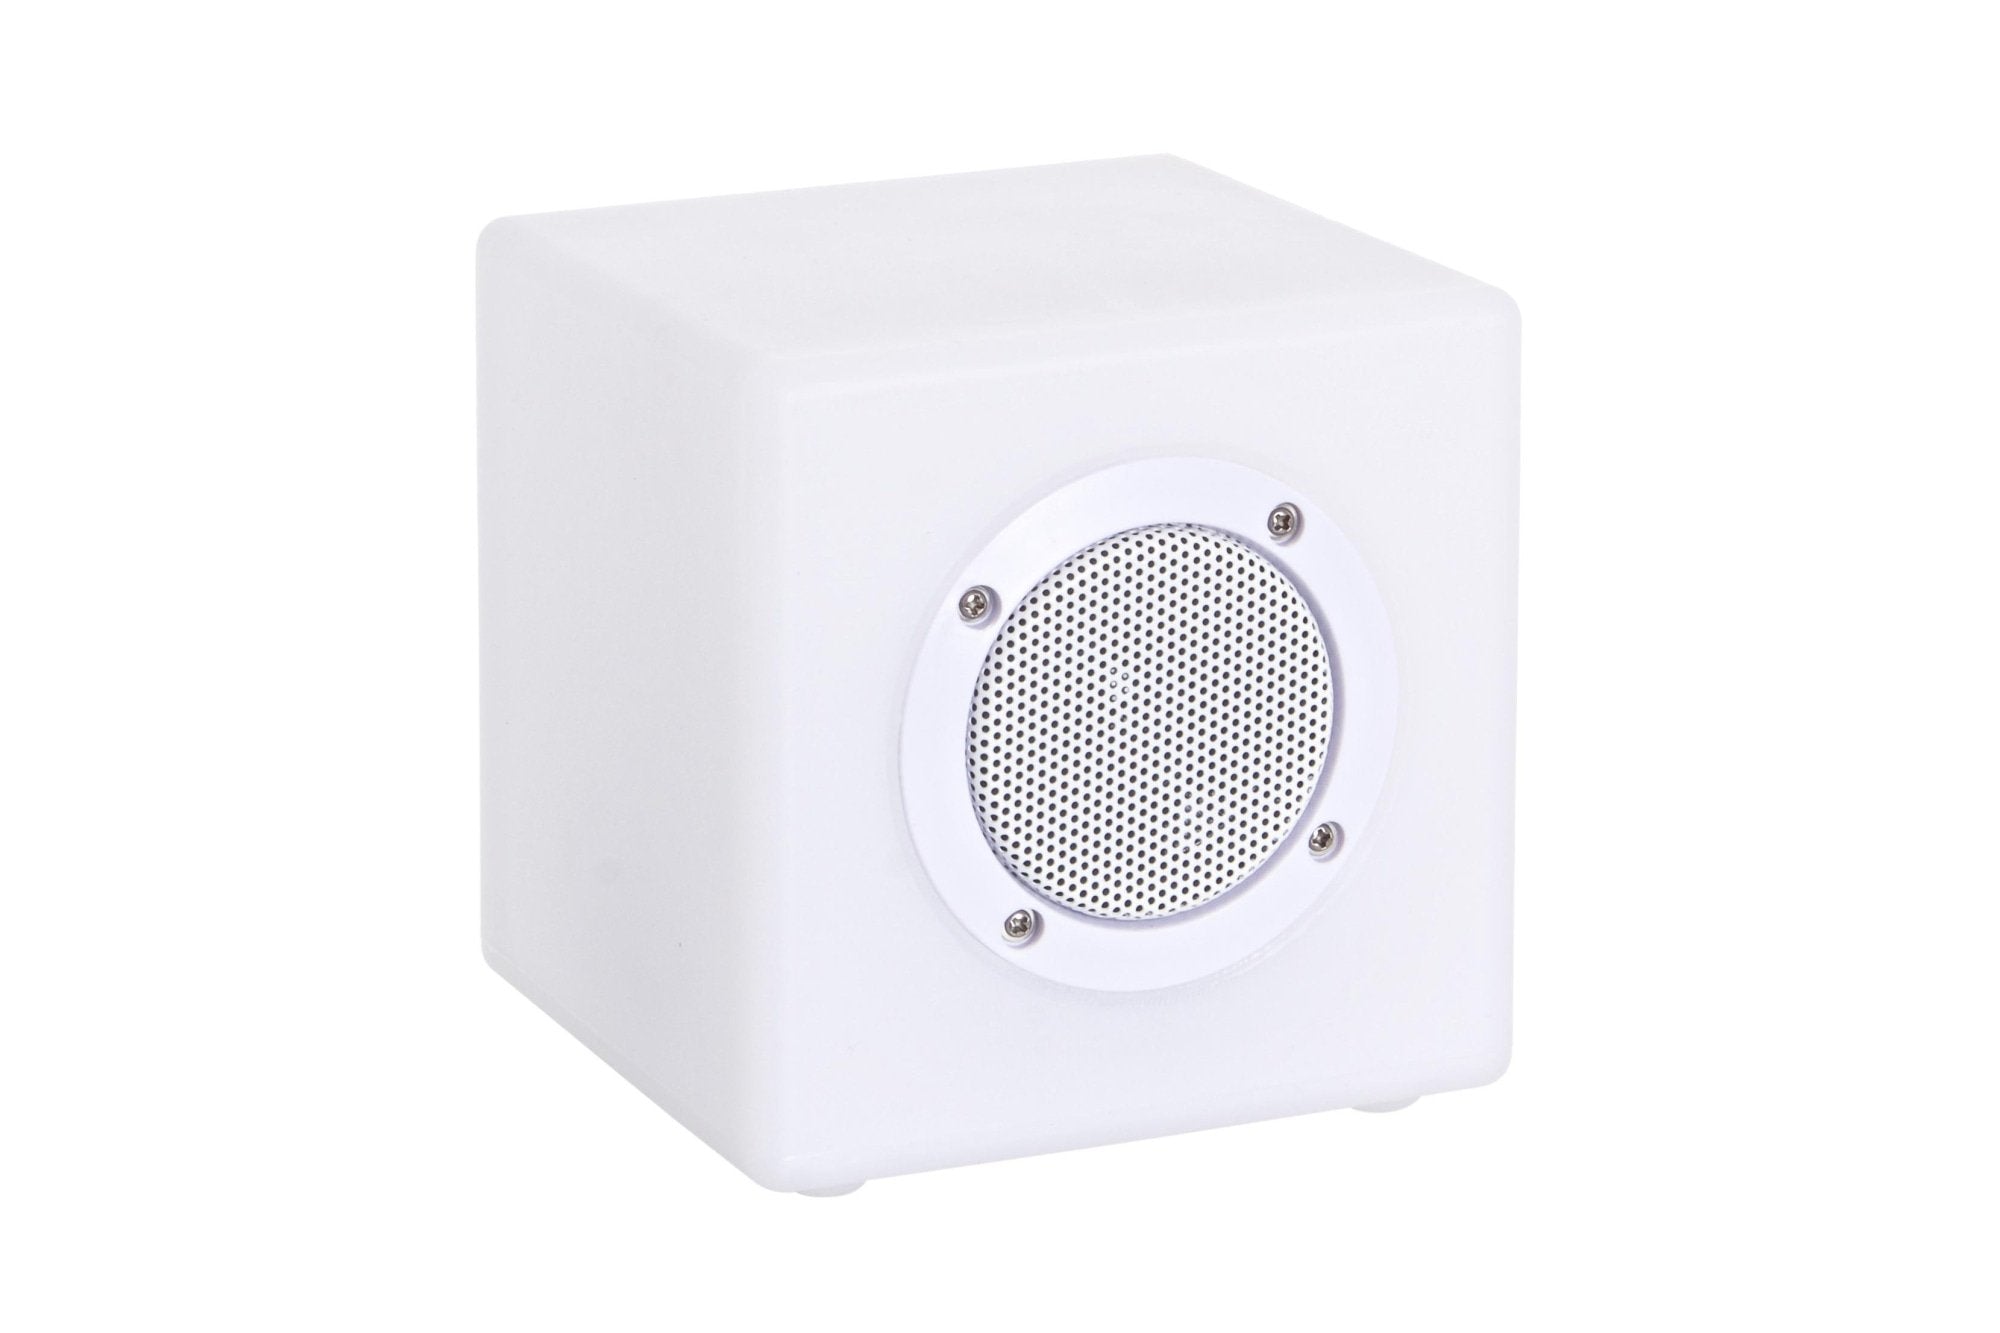 LED lámpa Bluetooth hangszóróval, Bizzotto Cube, 7 szín, USB kábel + távirányító, 15x15x15 cm, 15x15x15 cm